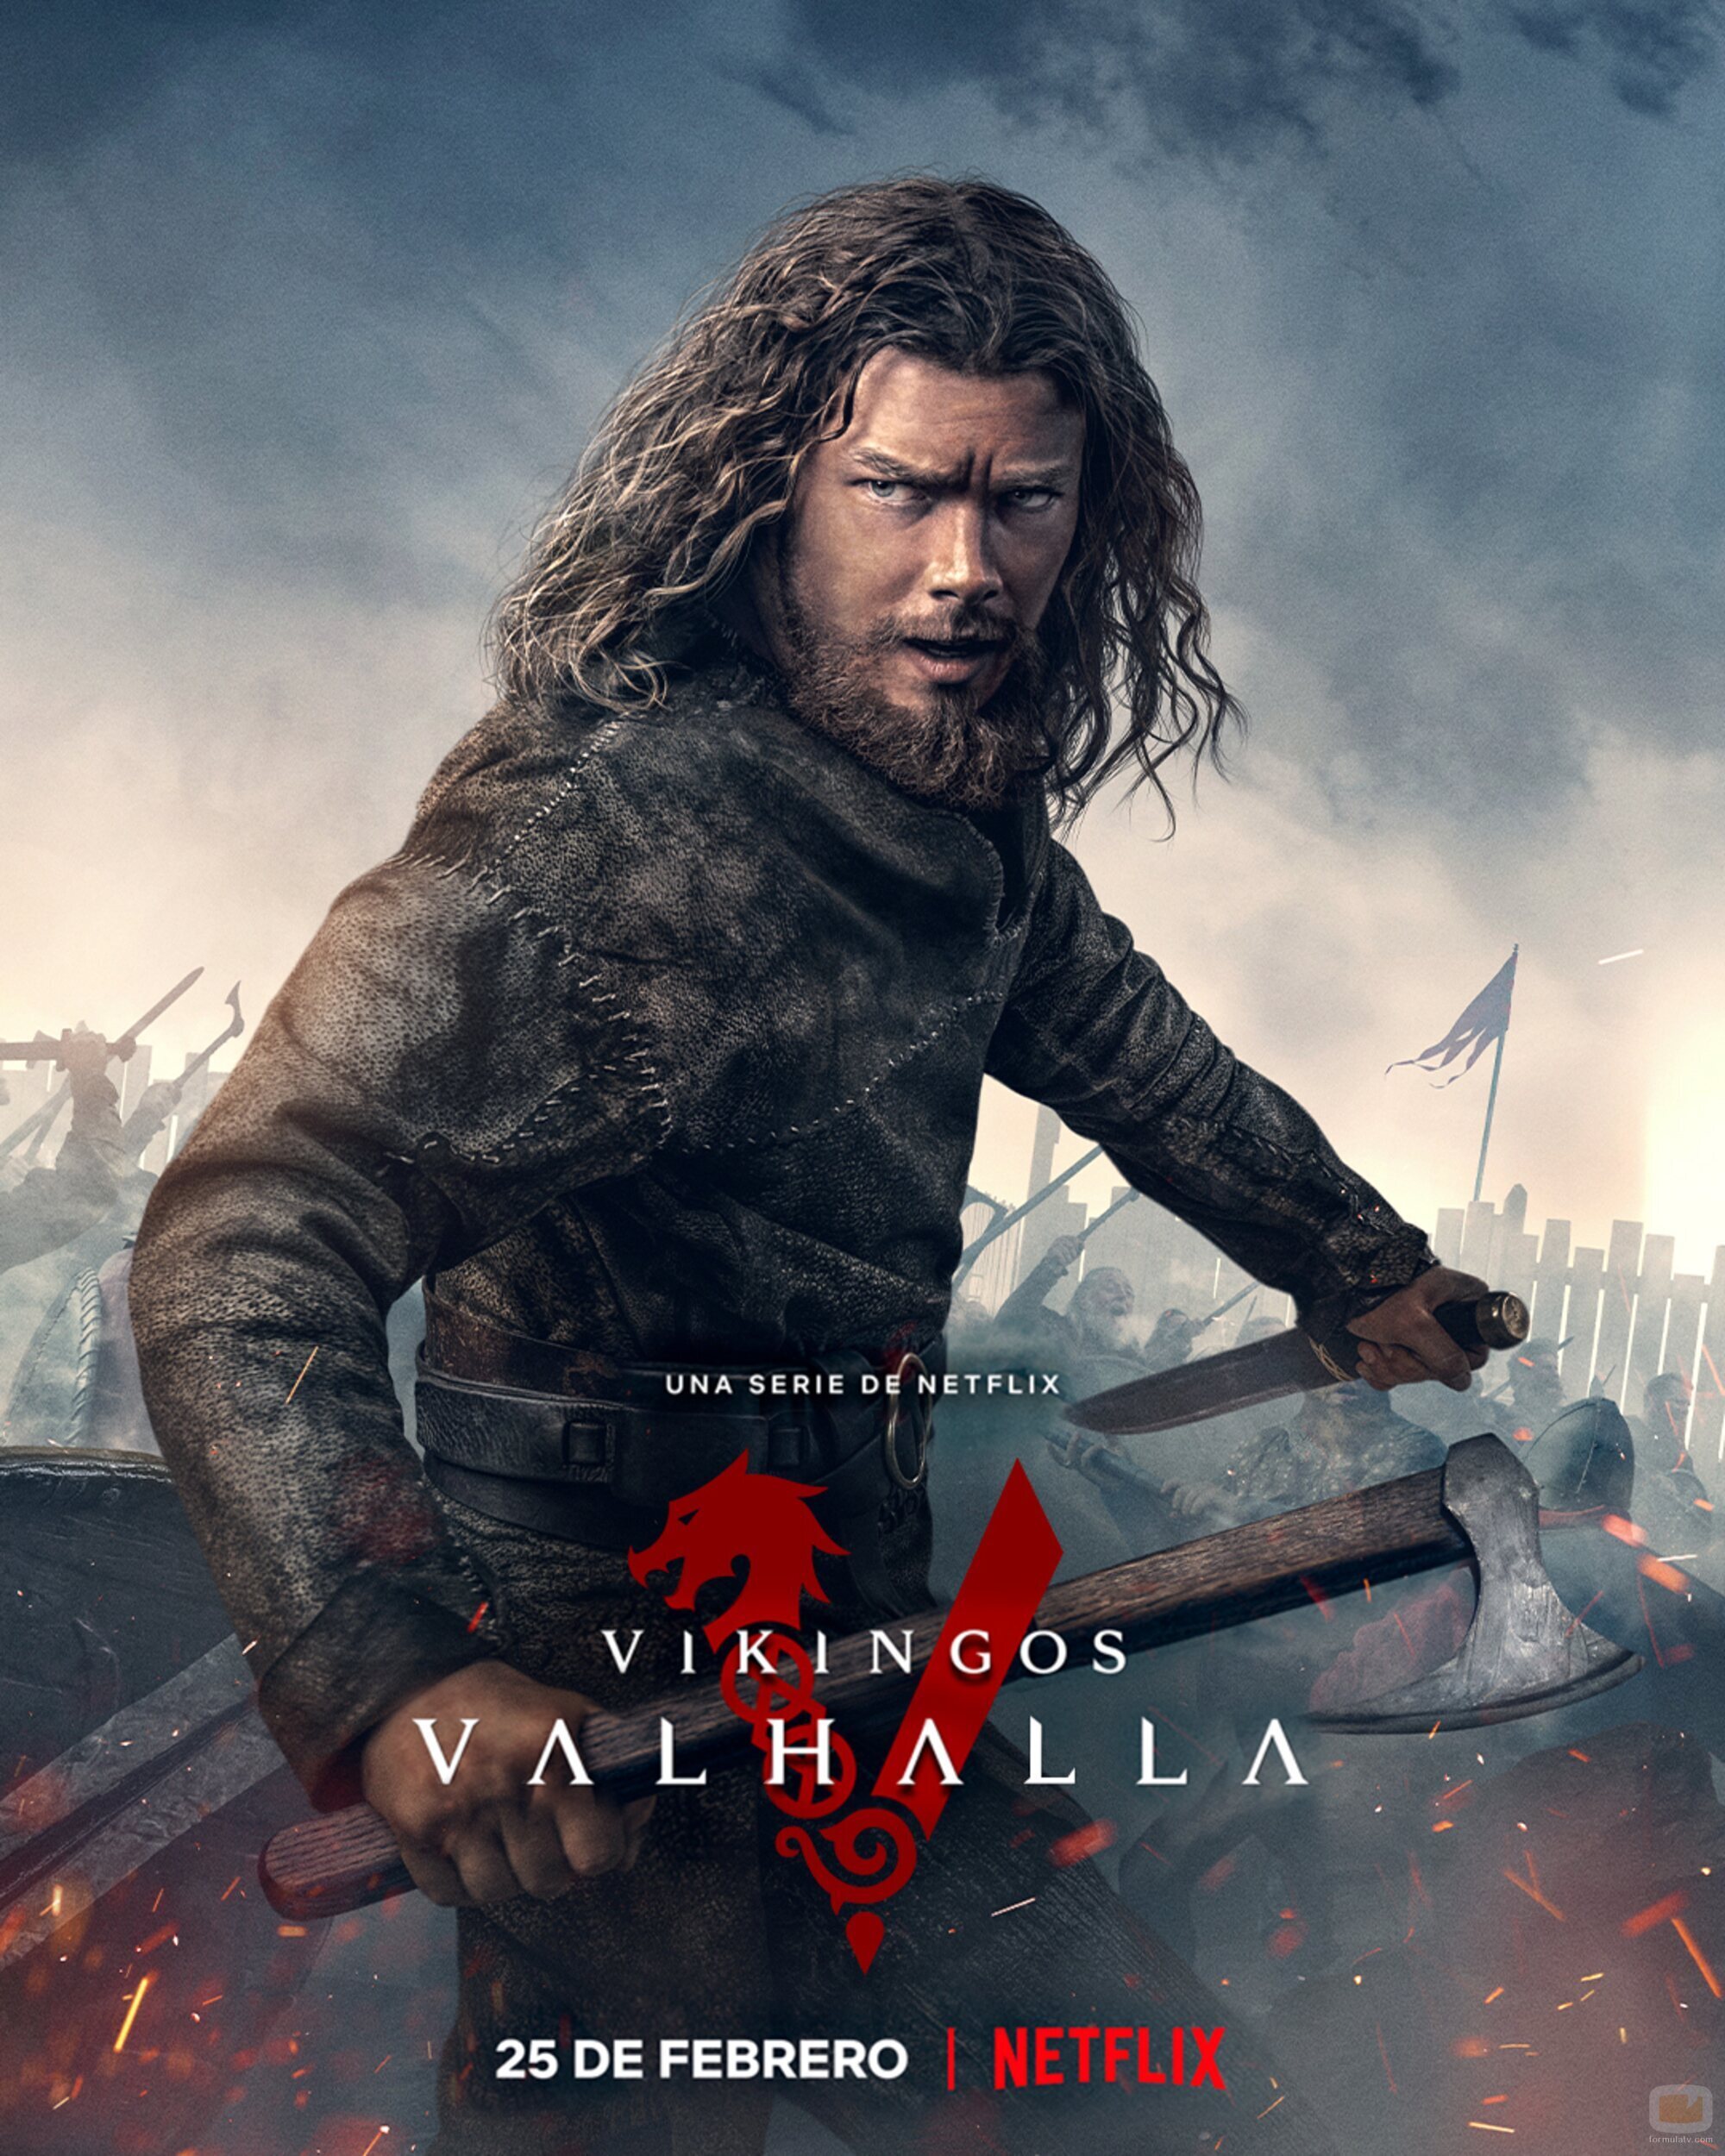 Póster de Leif en la primera temporada de 'Vikingos: Valhalla'